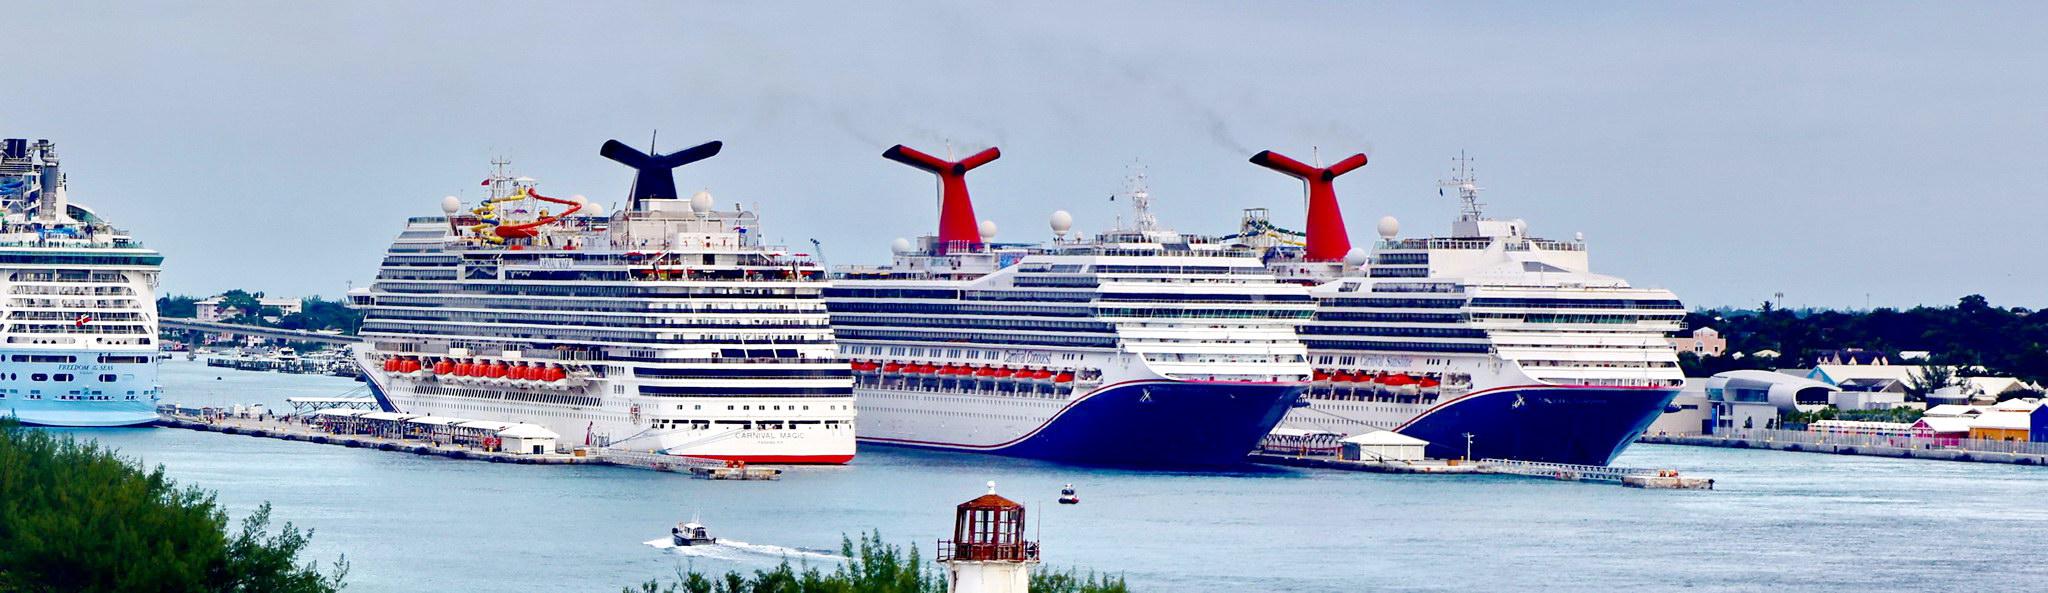 Корпорация Carnival замедлит темпы строительства новых лайнеров